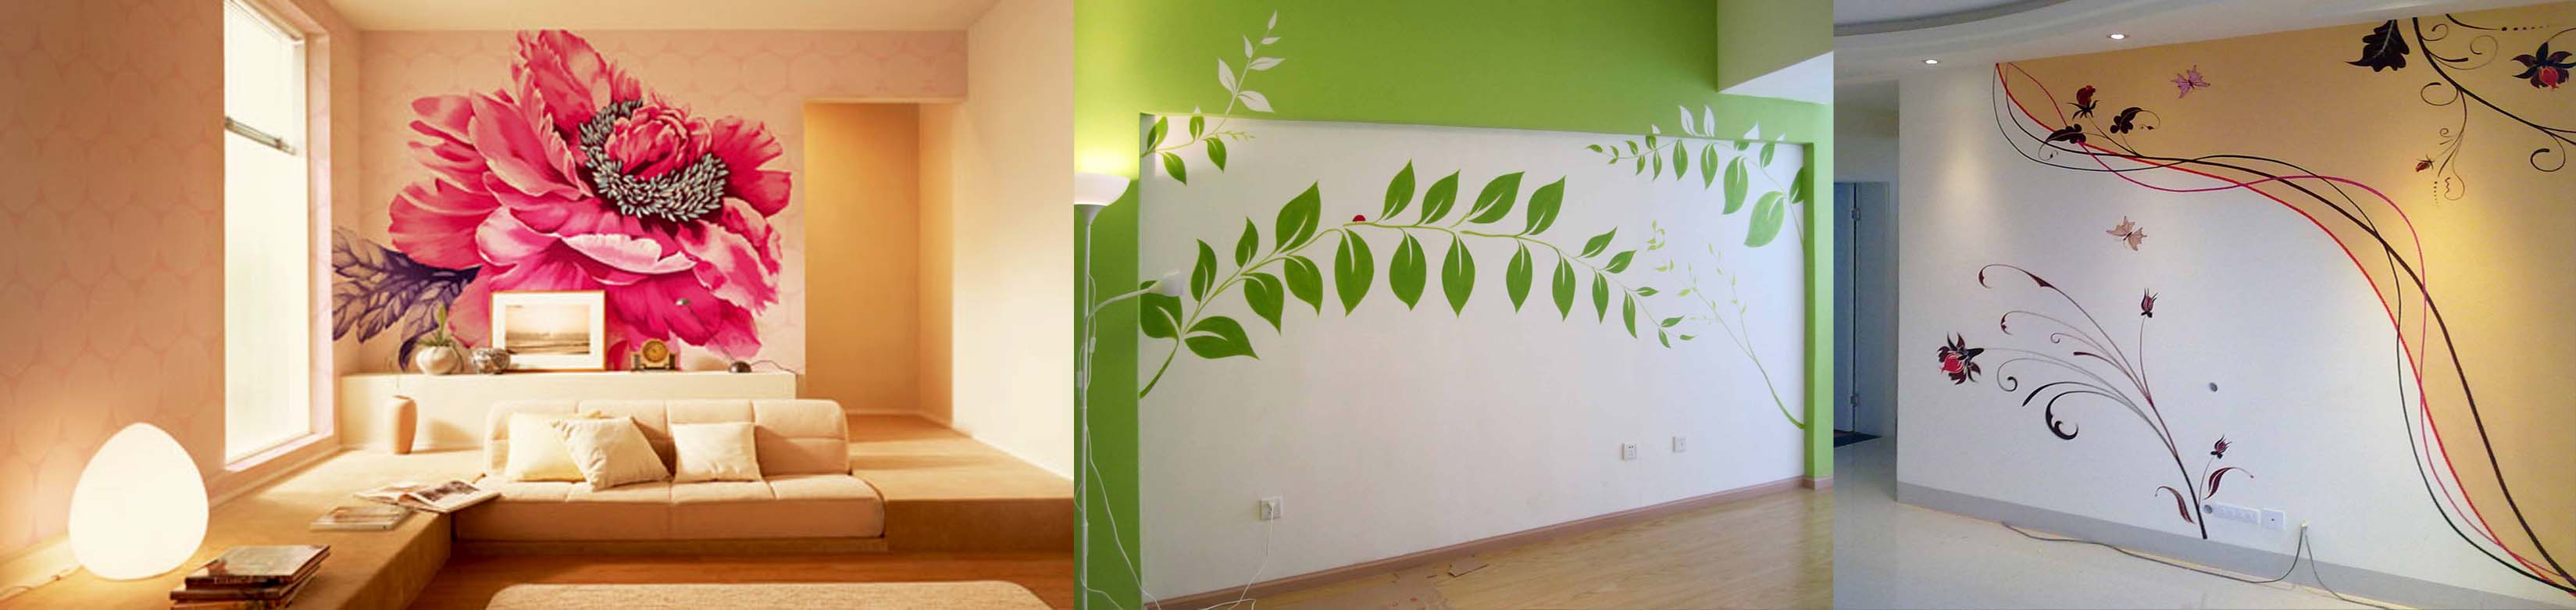 昆明手绘教你如何亲手设计自己喜欢的手绘墙